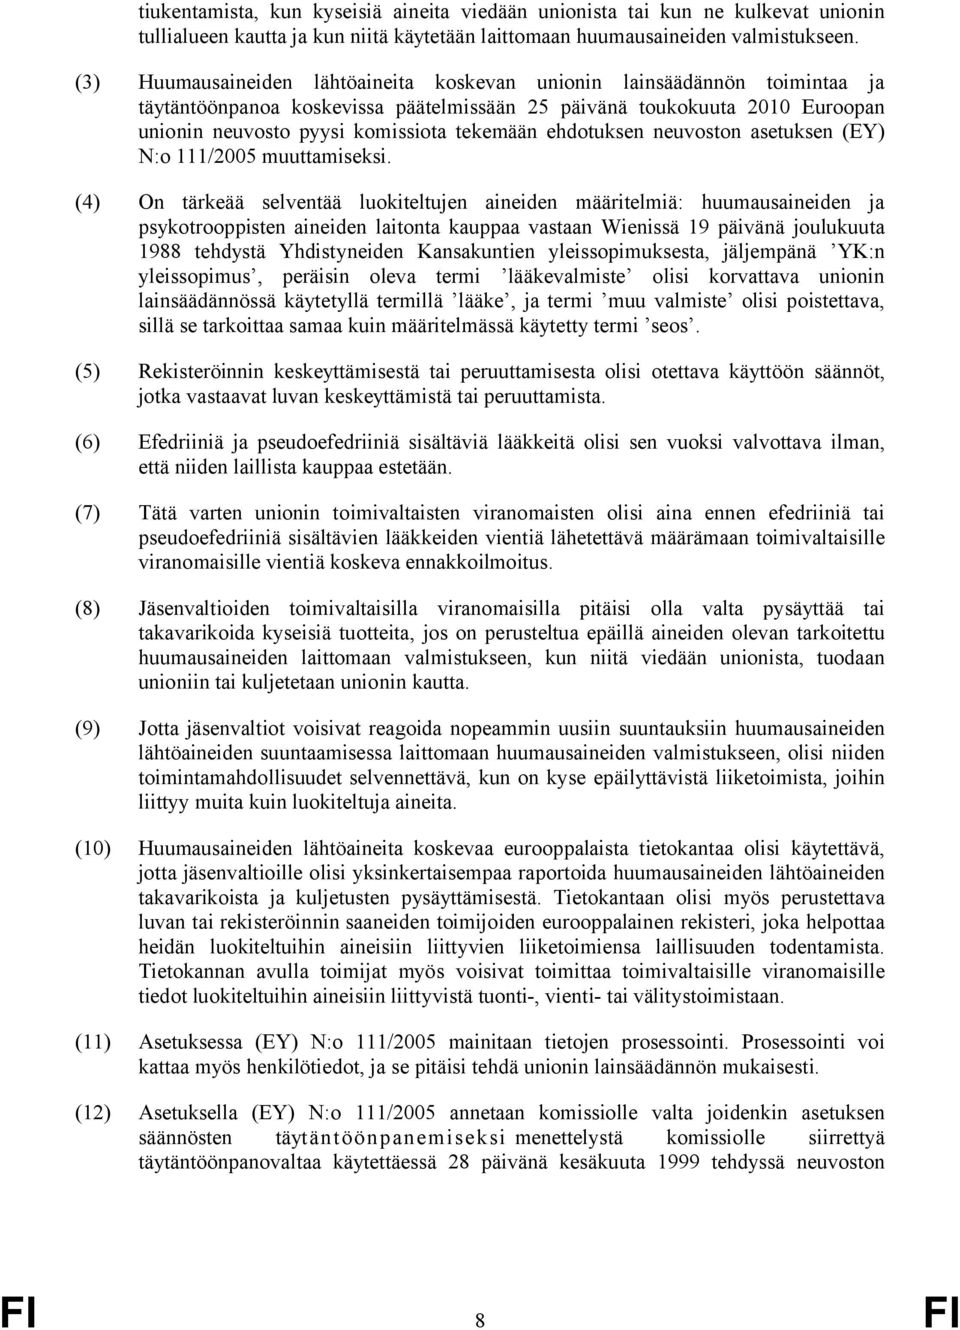 ehdotuksen neuvoston asetuksen (EY) N:o 111/2005 muuttamiseksi.